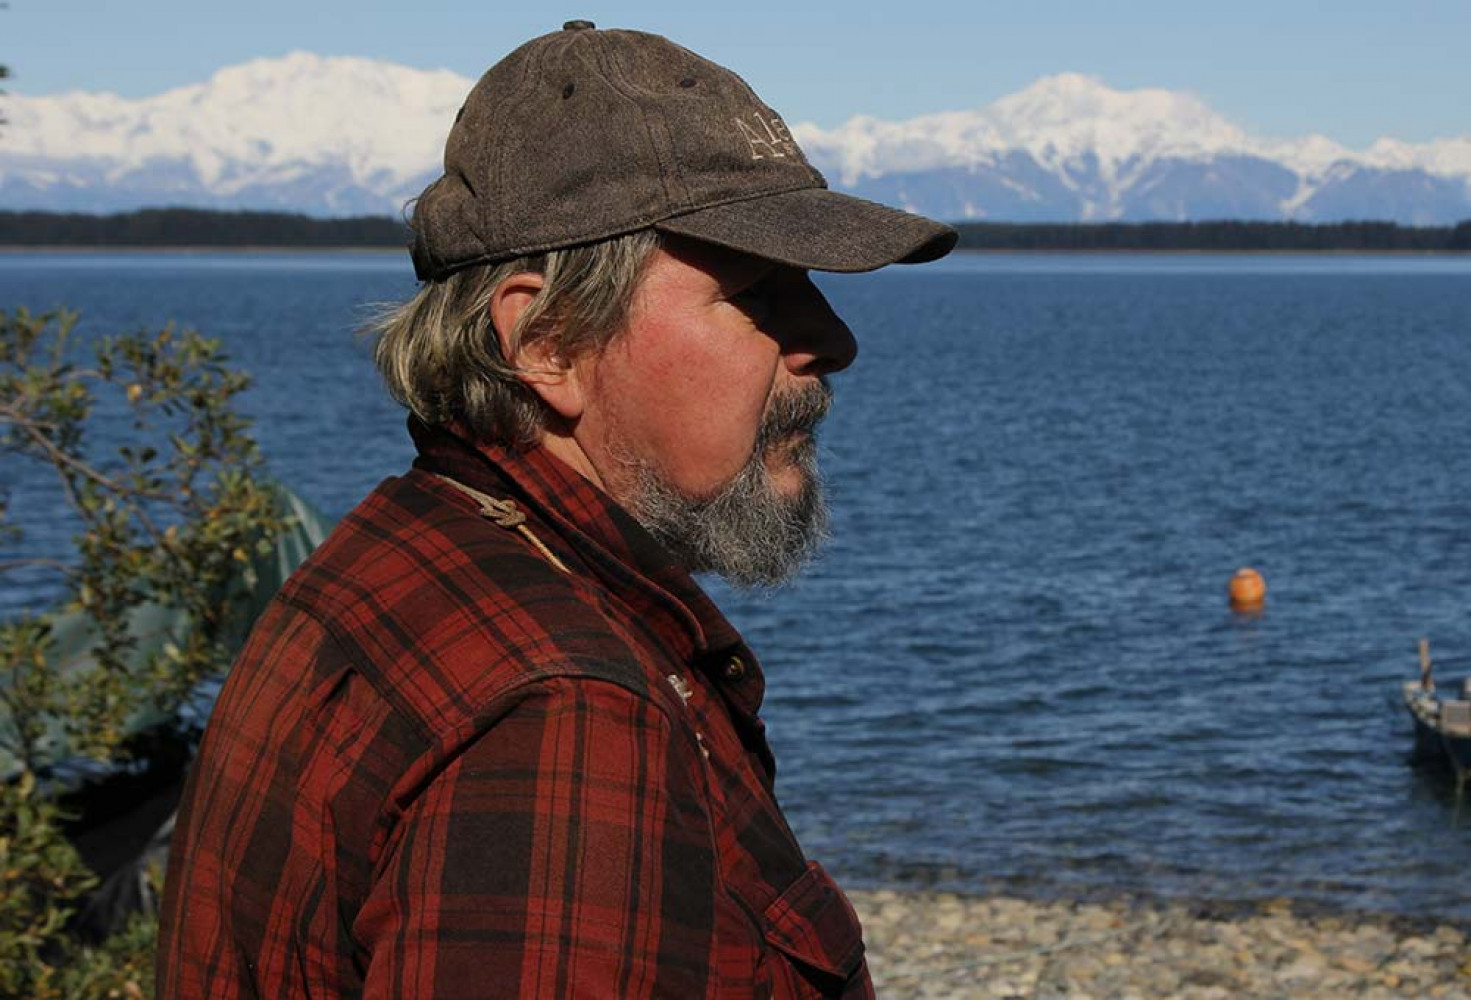 VIDEO: Alaskalı fok avcısı UFO’larla karşı karşıya